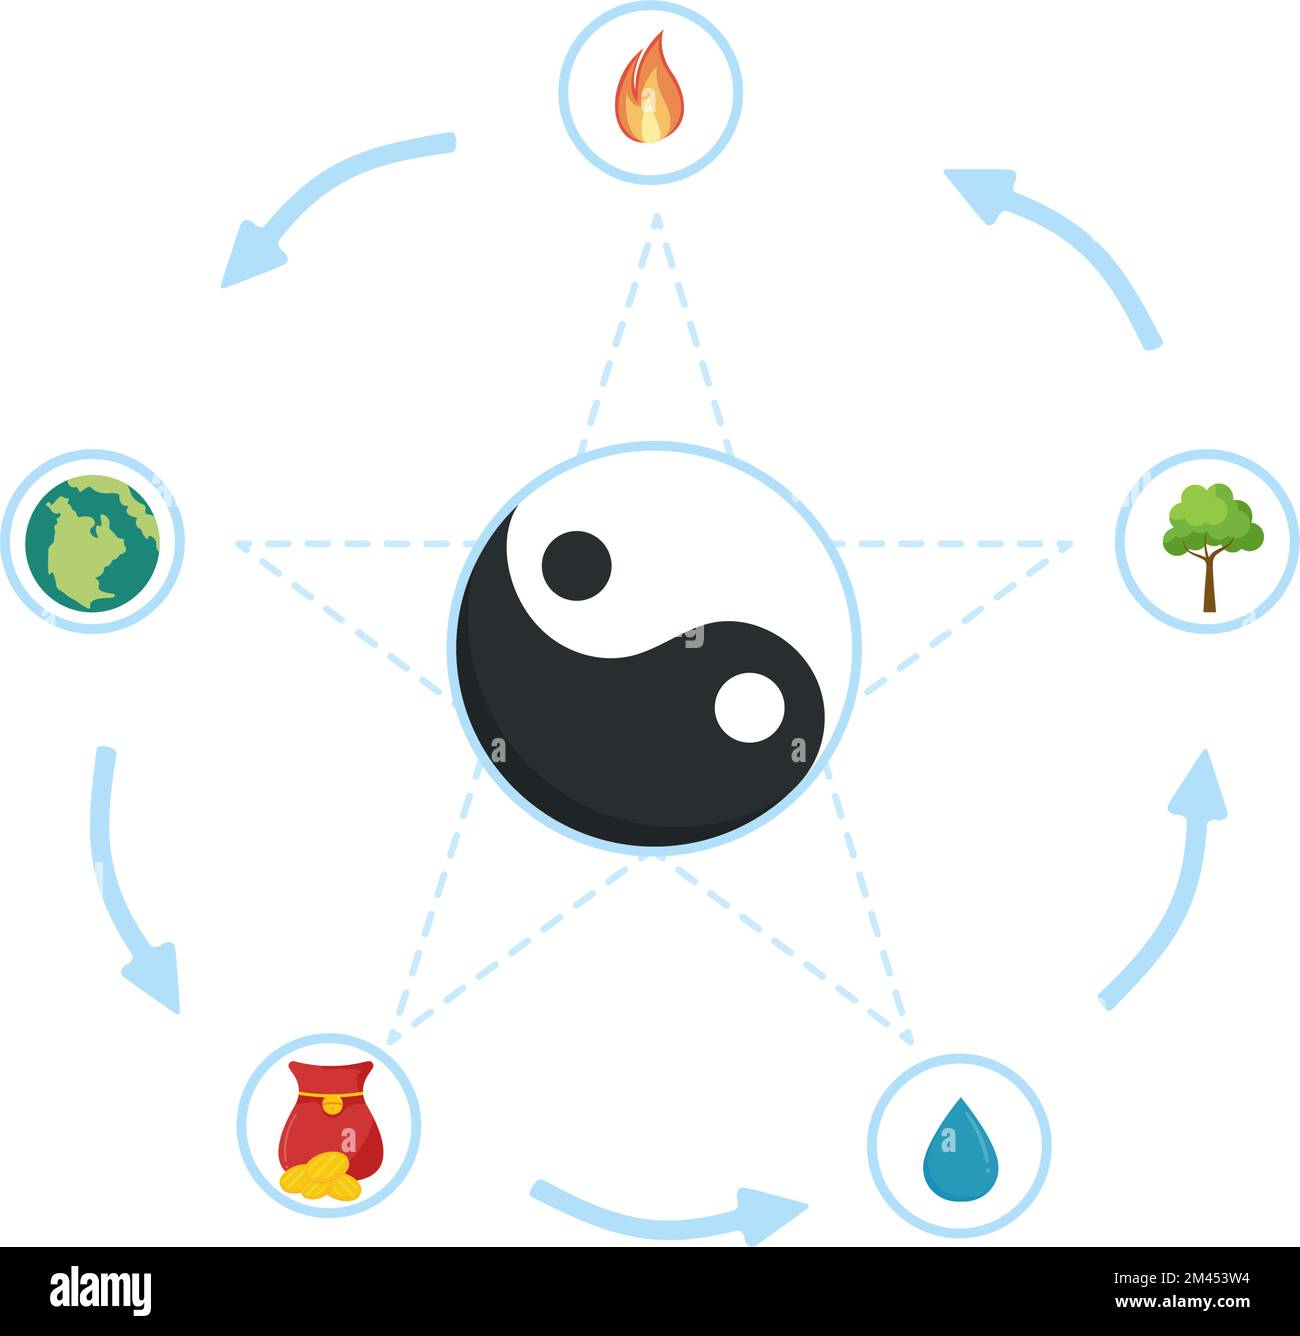 Feng Shui 5 éléments de la nature dans les cercles reliés par des lignes avec l'eau, le bois, le feu, la terre, le métal dans le dessin à la main de charon plat modèles Illustration Illustration de Vecteur